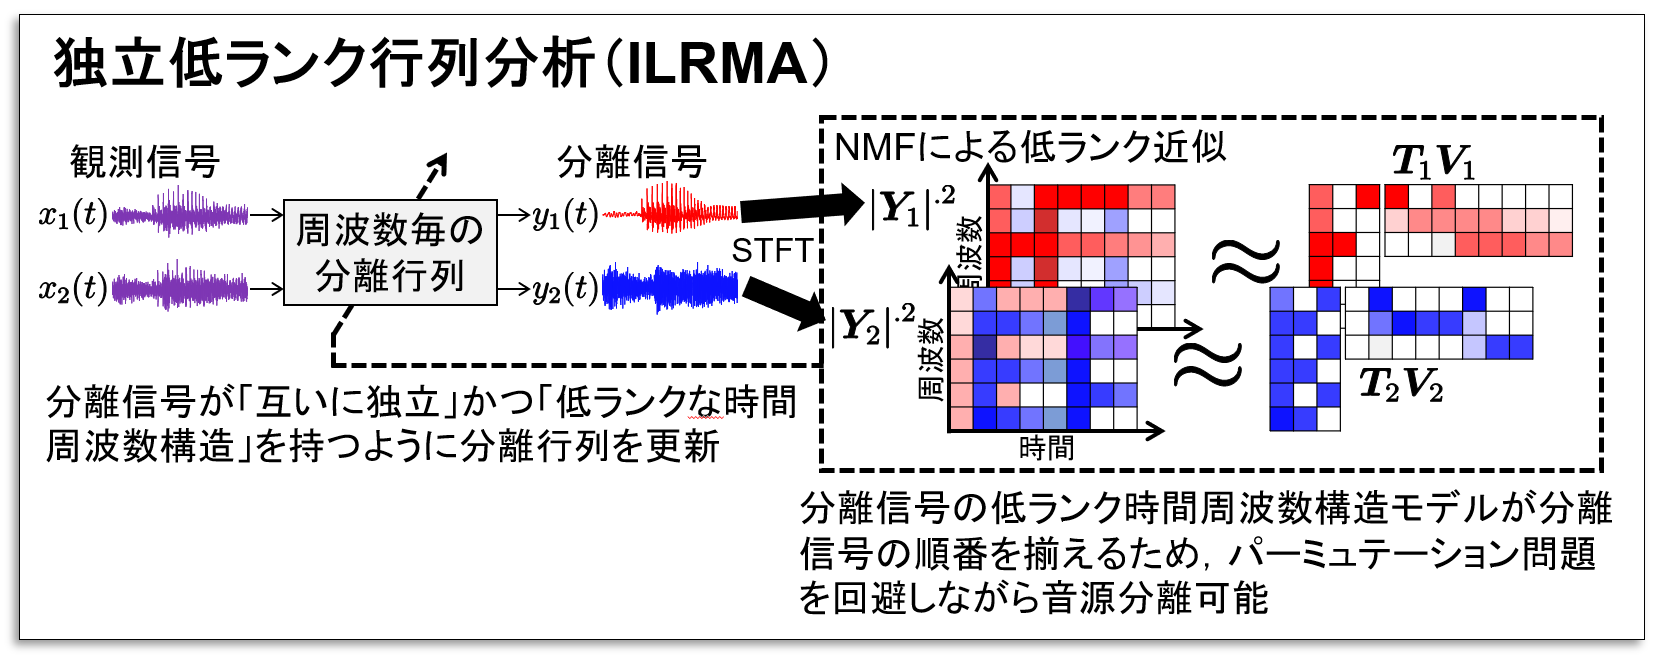 ILRMAの図